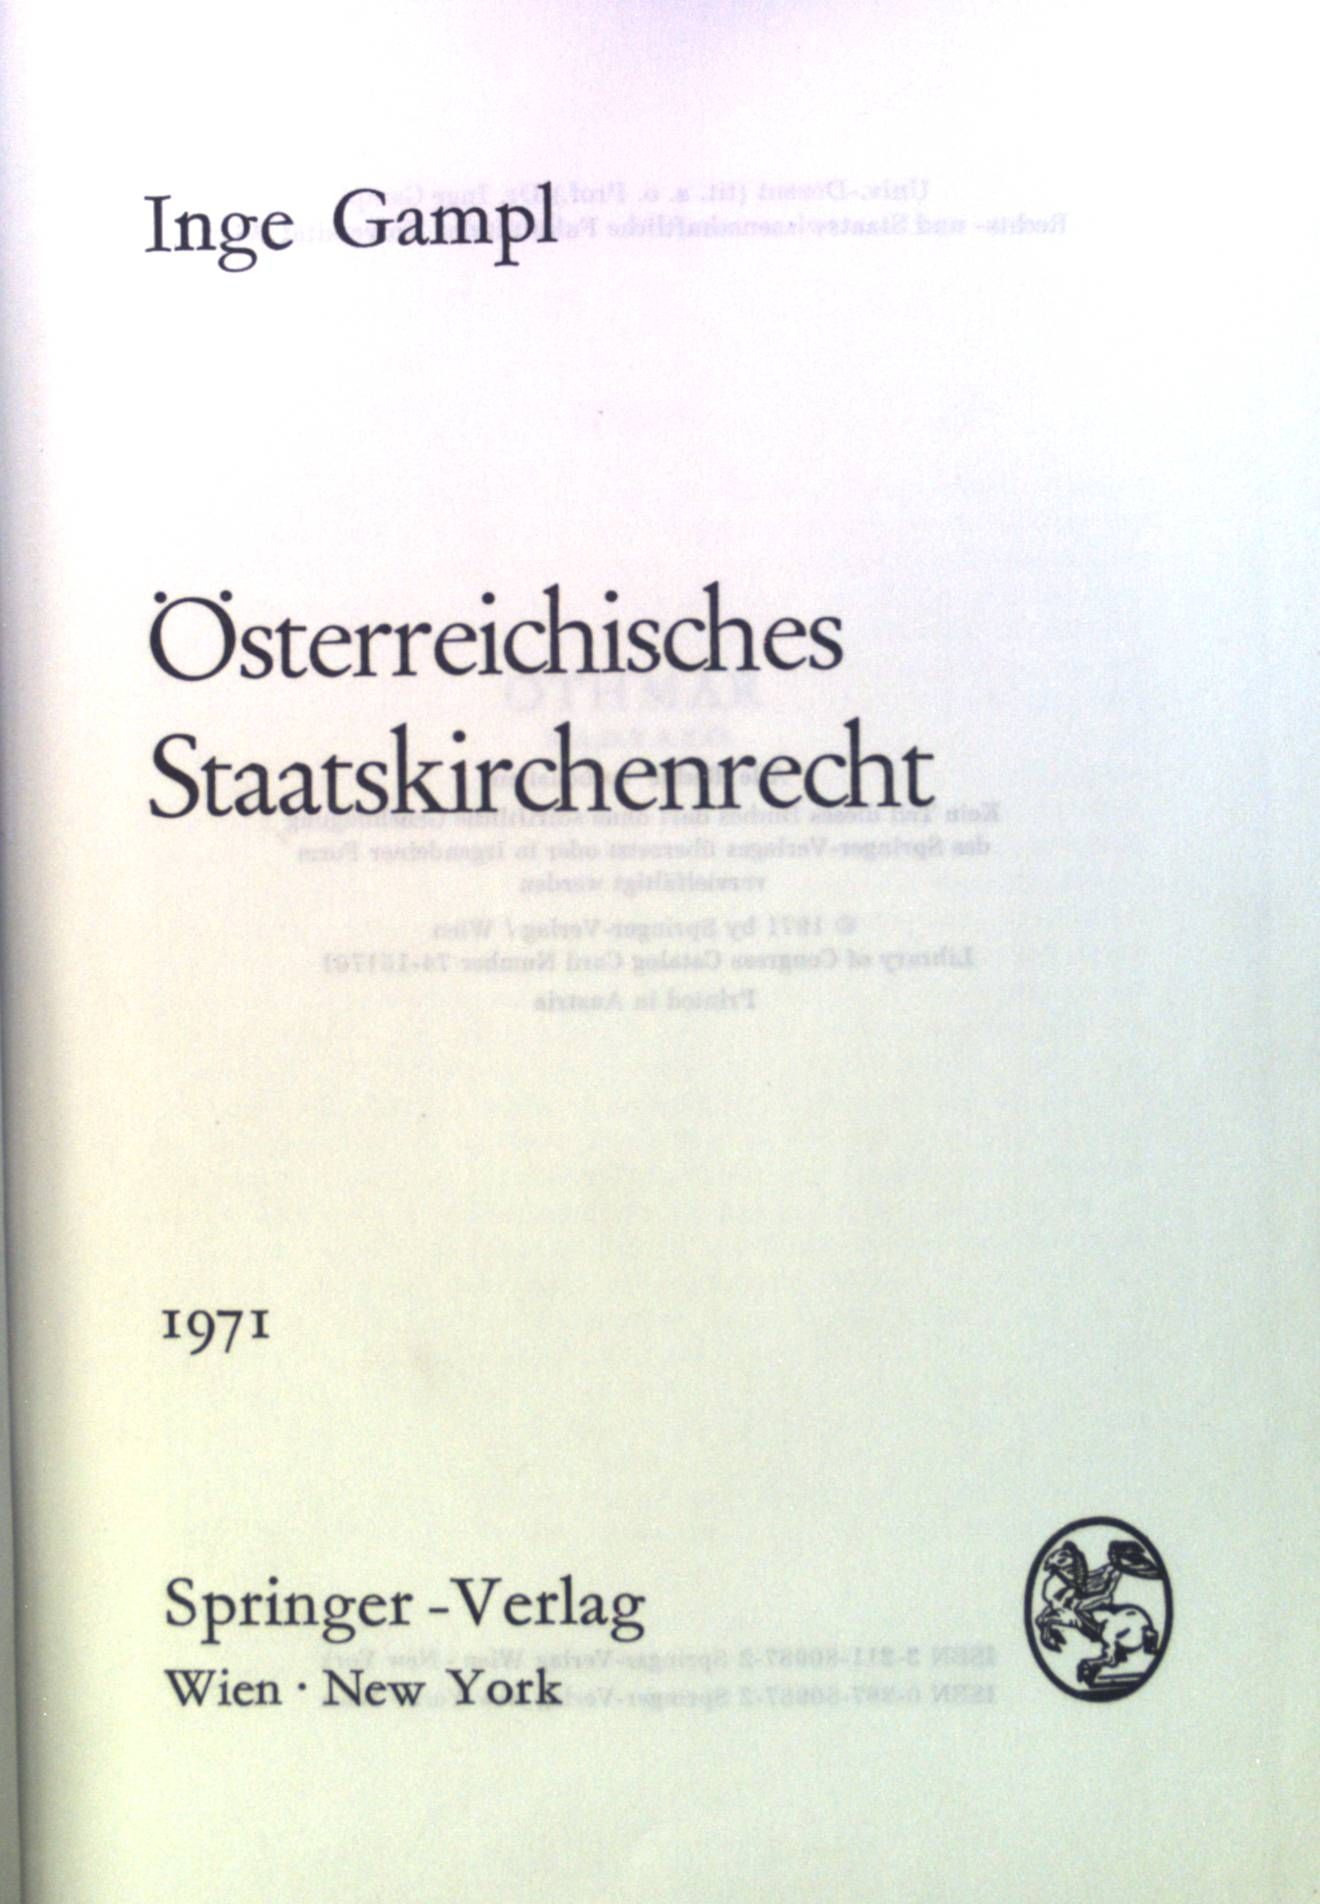 Österreichischisches Staatskirchenrecht. Rechts- und Staatswissenschaften ; 23 - Gampl, Inge